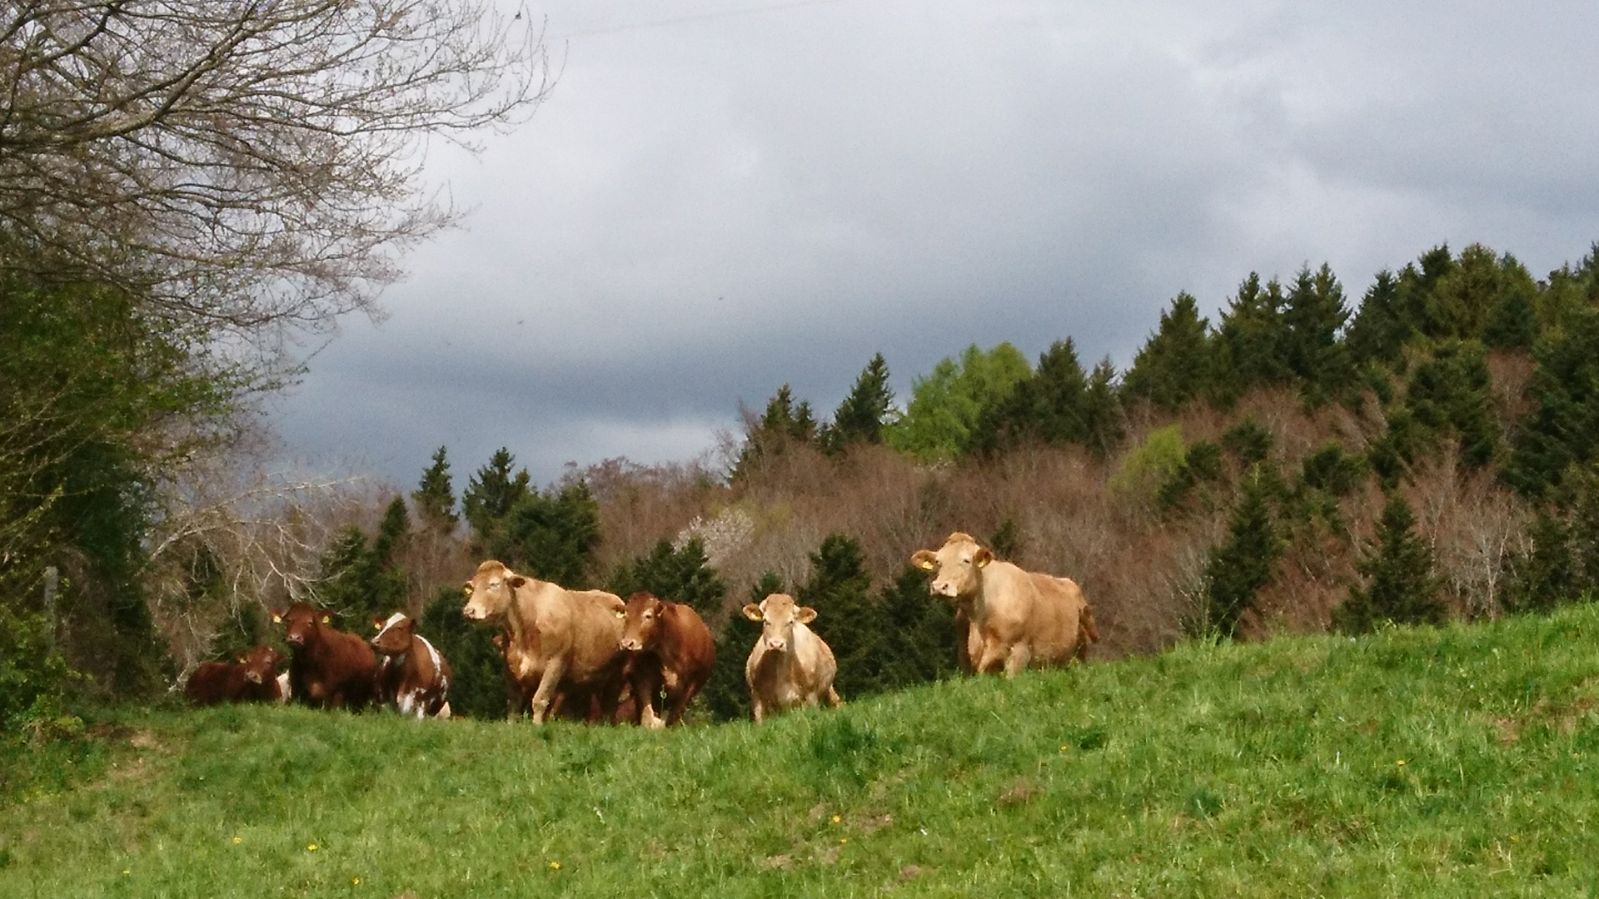 General 1599x899 landscape spring Switzerland animals grass cow